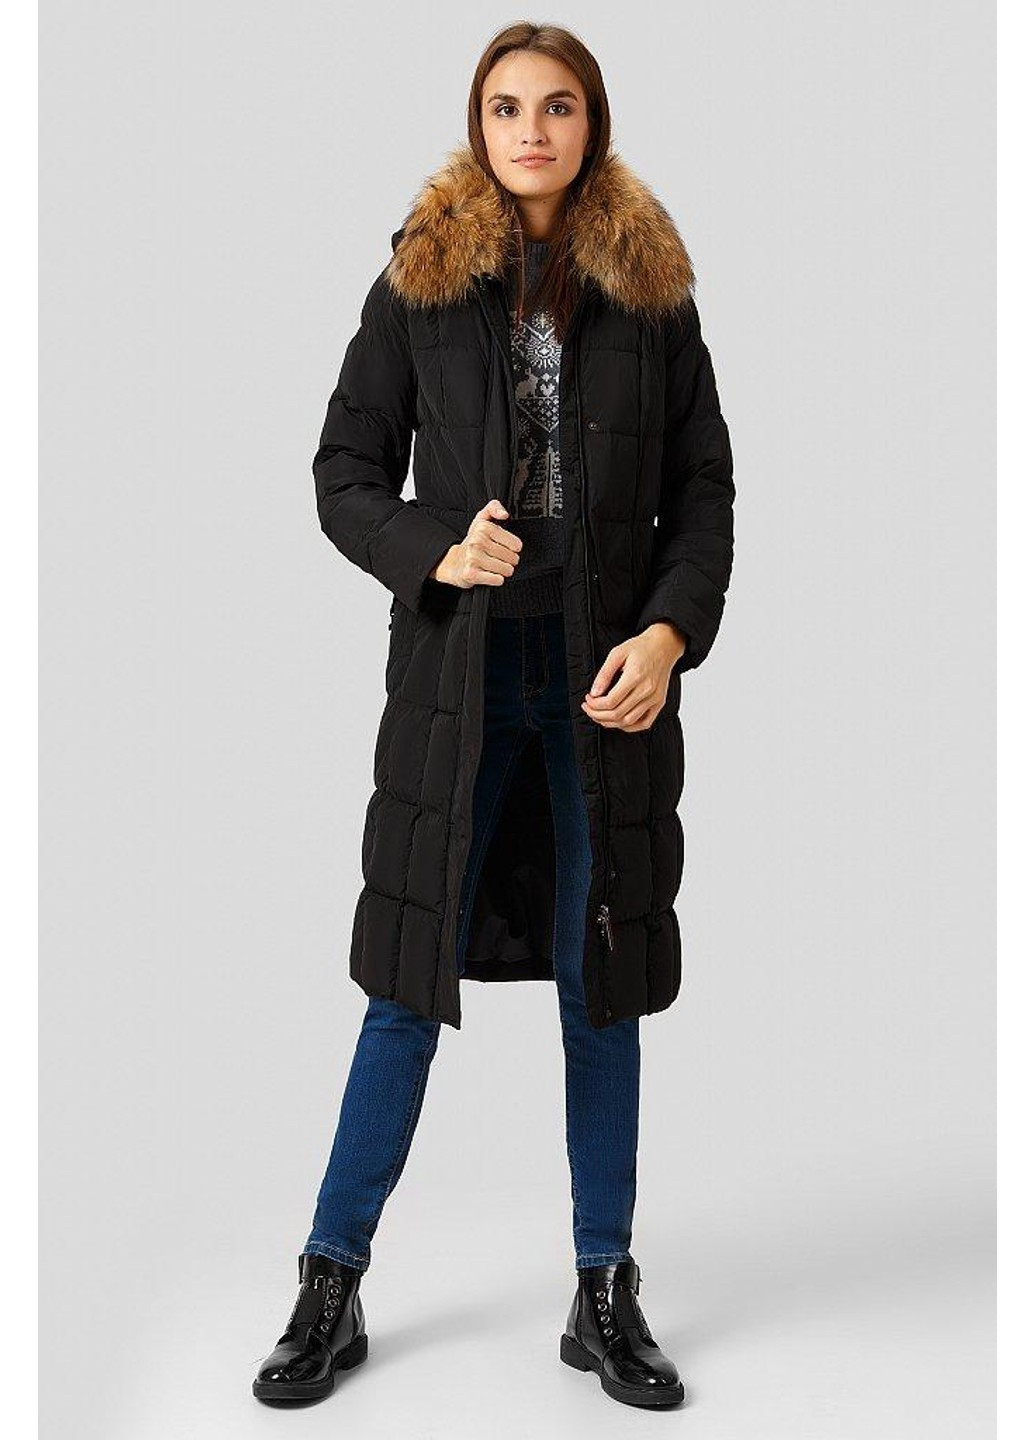 Черная зимняя зимнее пальто w18-11035-200 Finn Flare